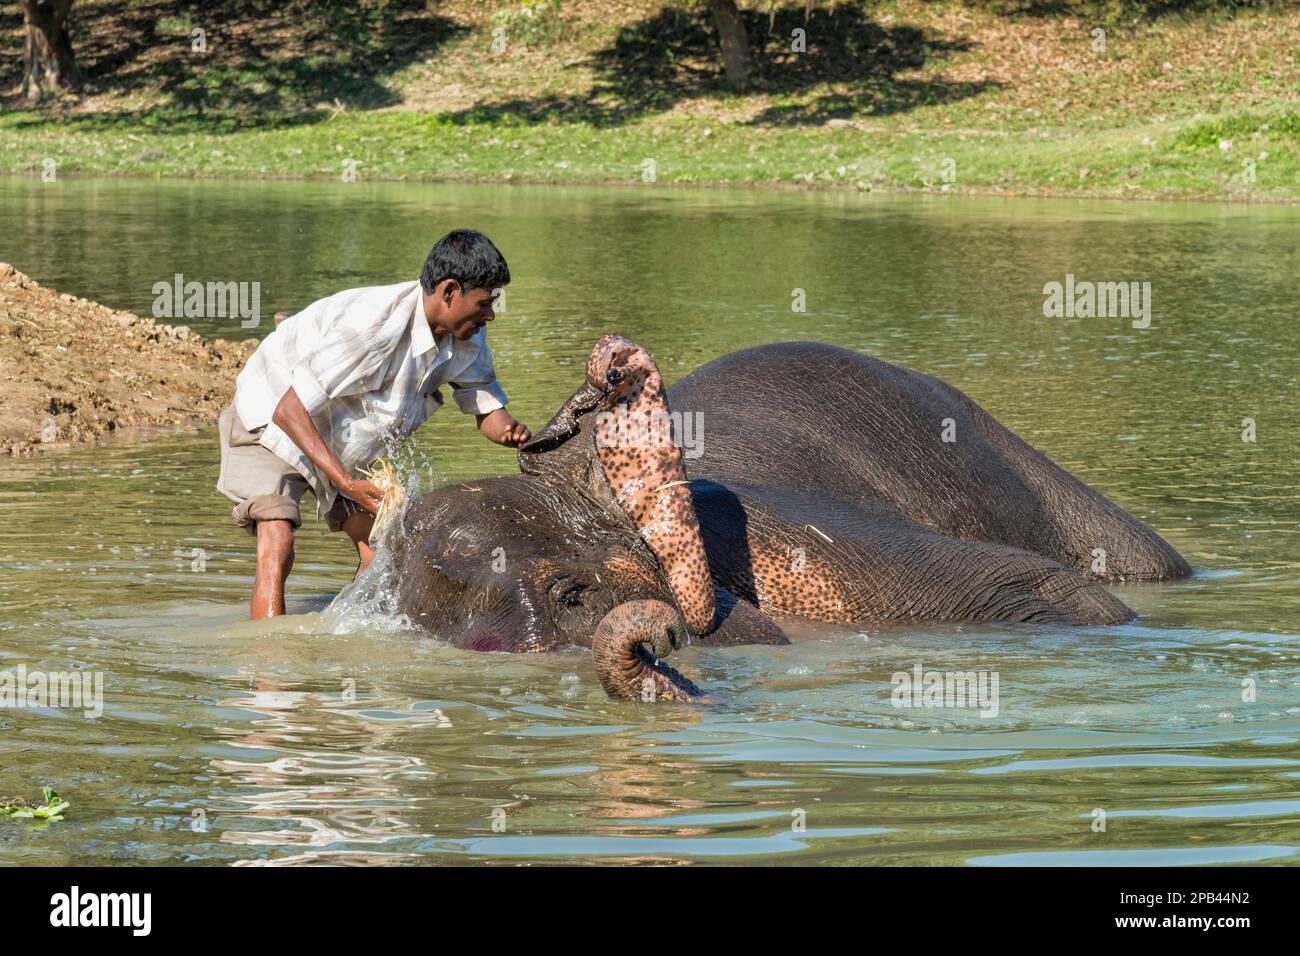 Mahout lavant son éléphant indien (Elepha maximus indicus) dans le fleuve, Parc national de Kaziranga, Assam, Inde, Asie Banque D'Images